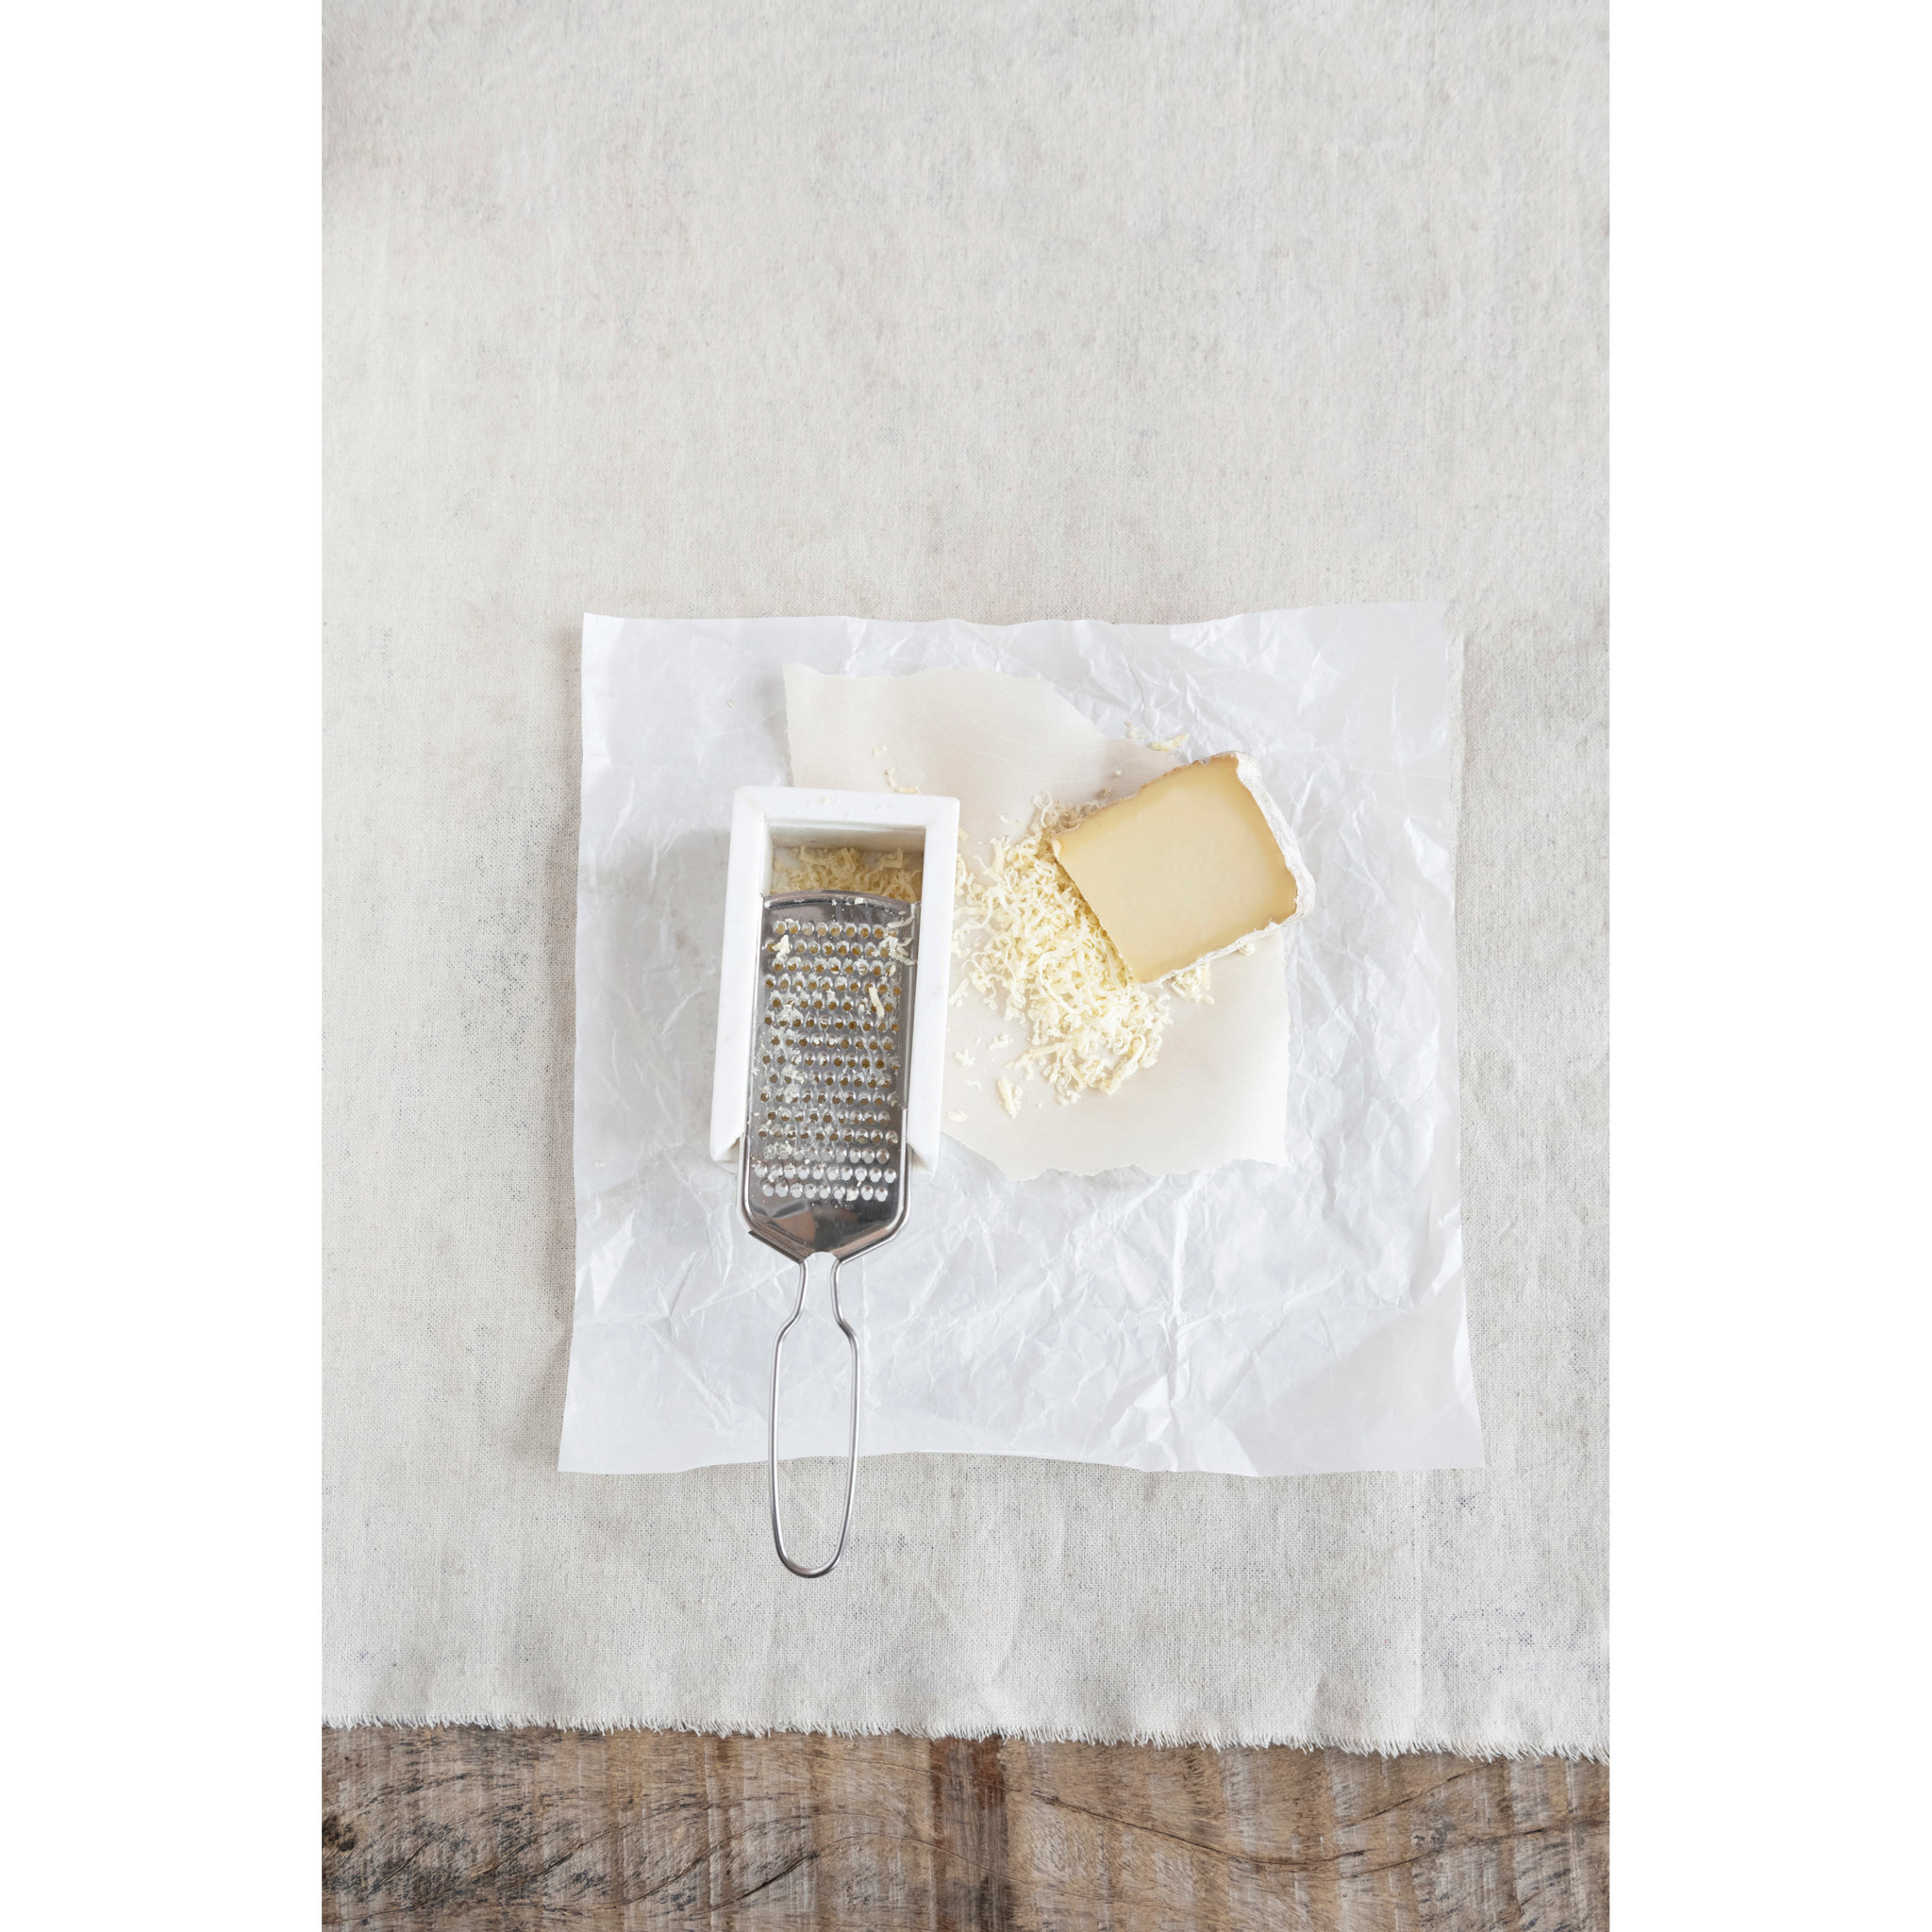 Râpe à fromage en acier inoxydable et marbre blanc - miv interiores